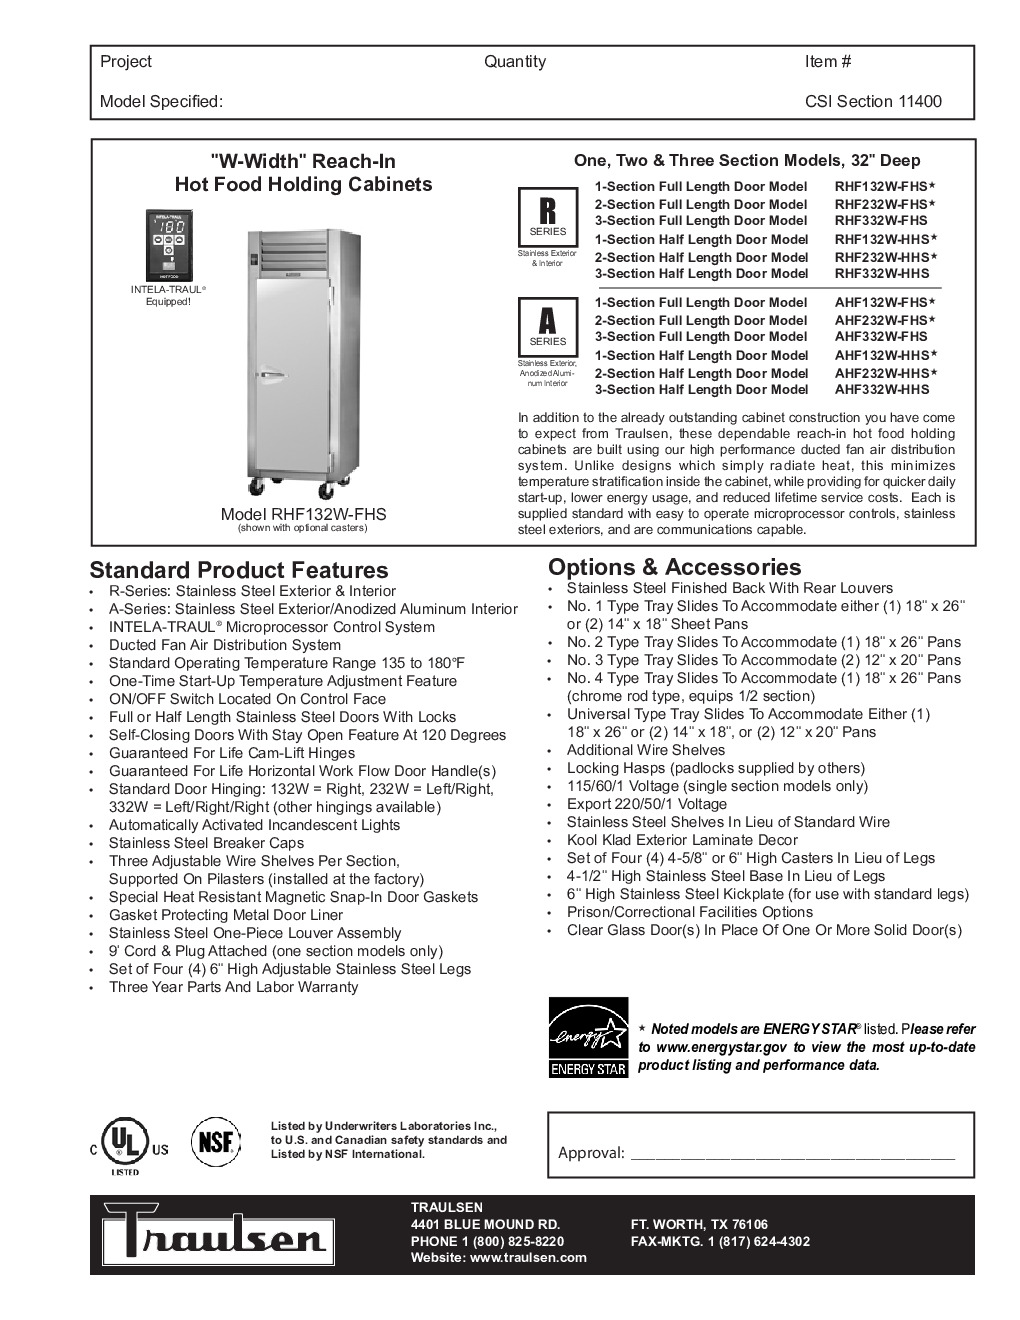 Traulsen AHF332W-FHG Reach-In Heated Cabinet